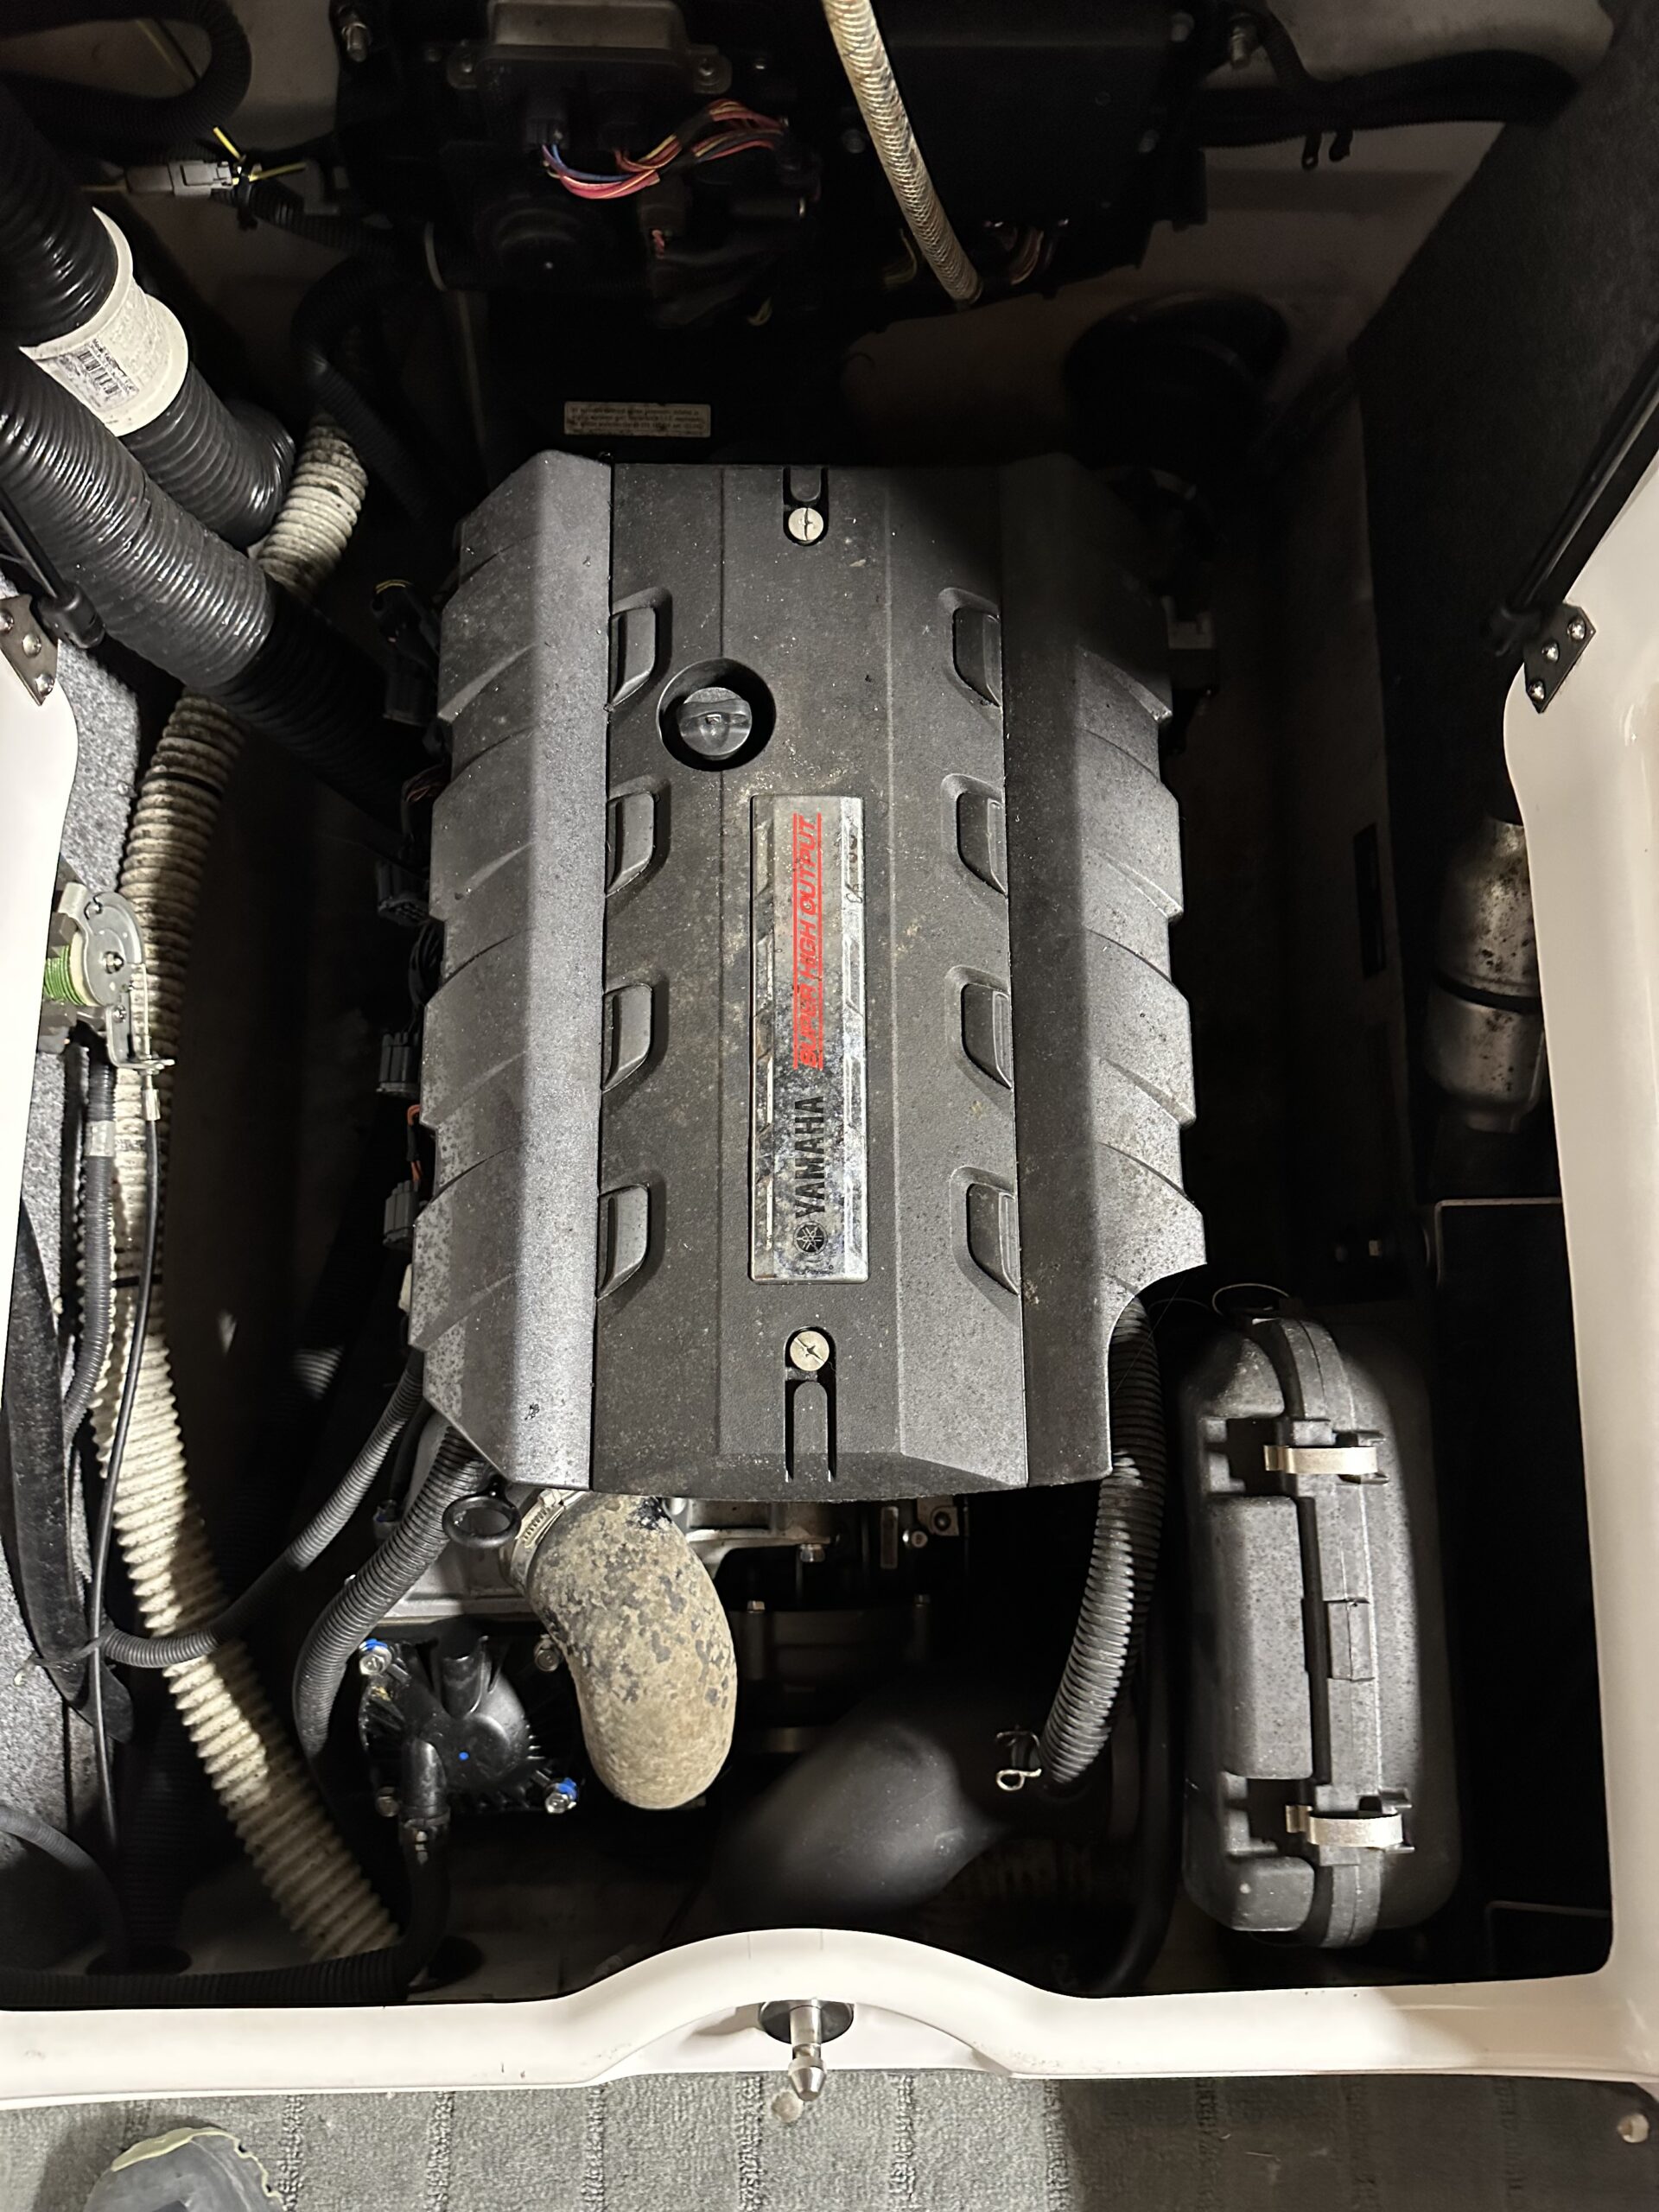 2015 Yamaha SX192 Supercharged 235hp